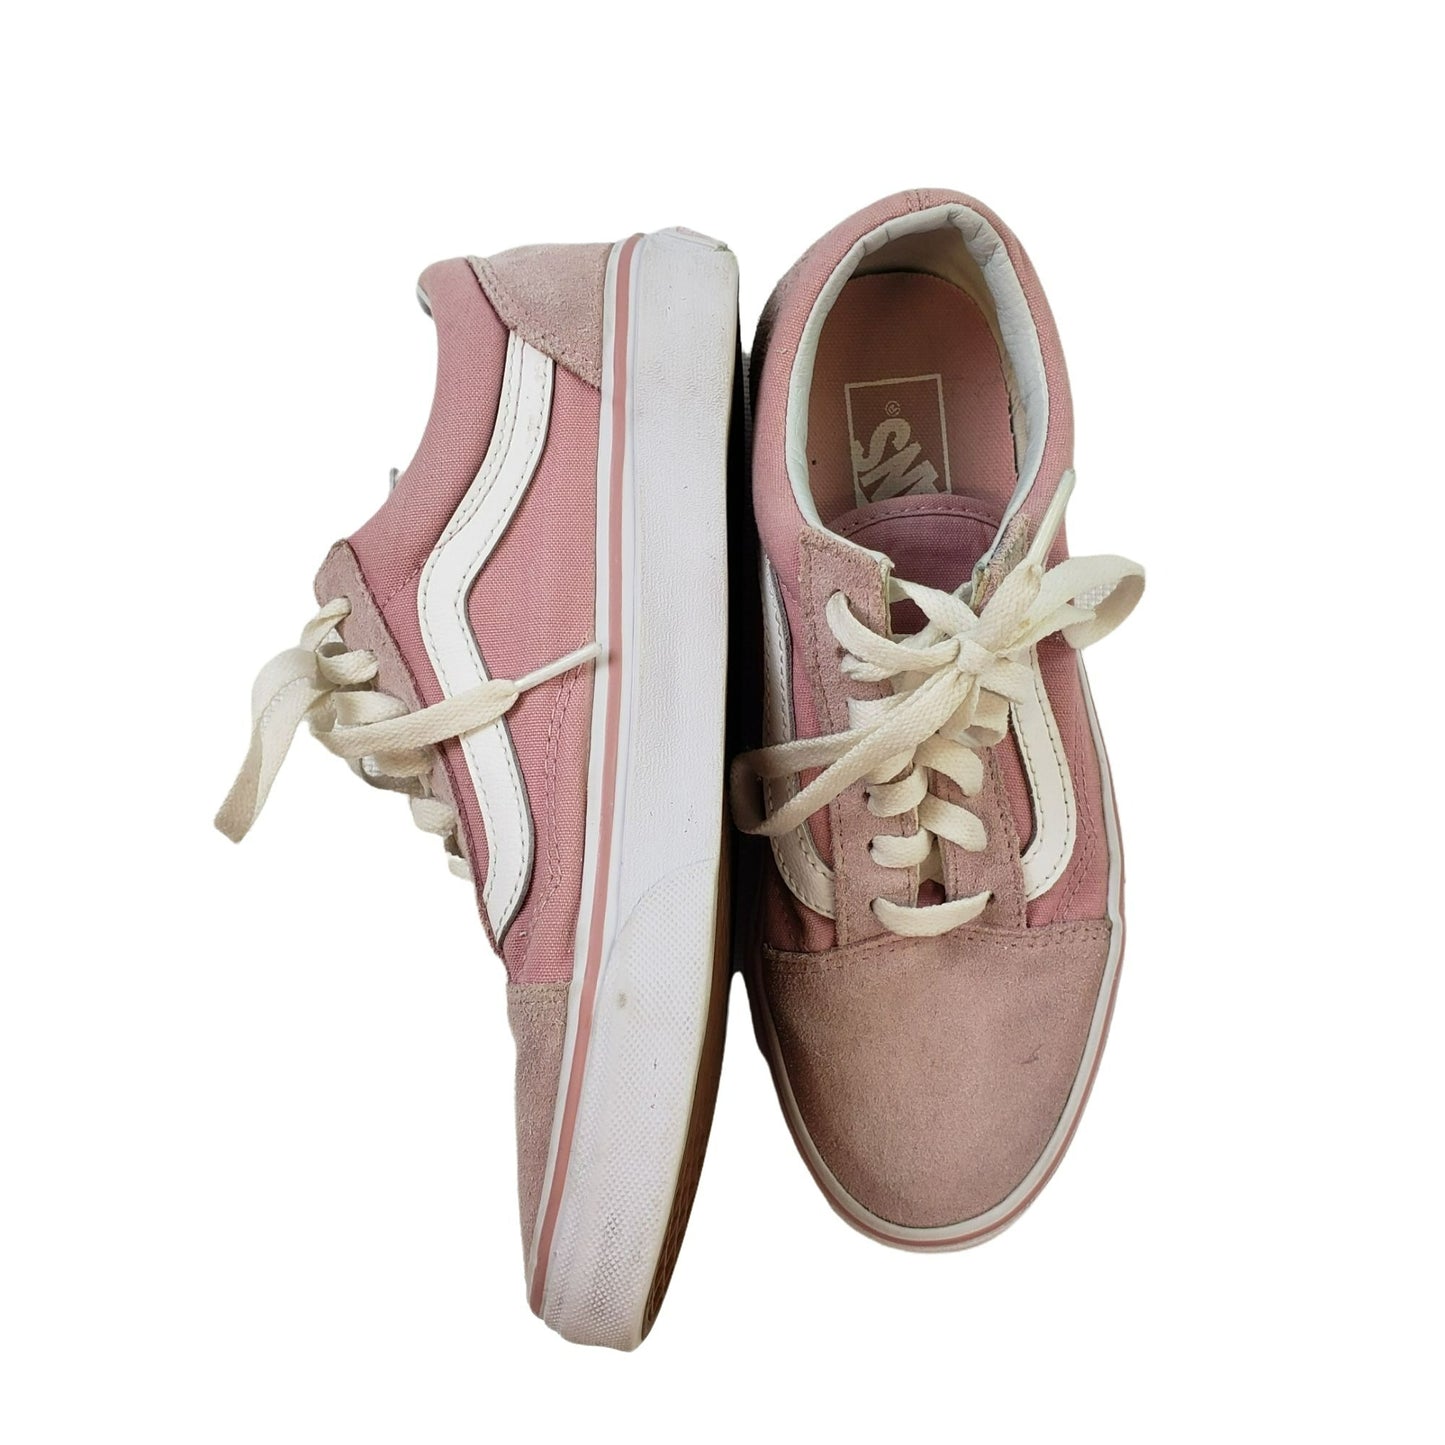 Vans Old Skool Pink Suede Trim Sneakers